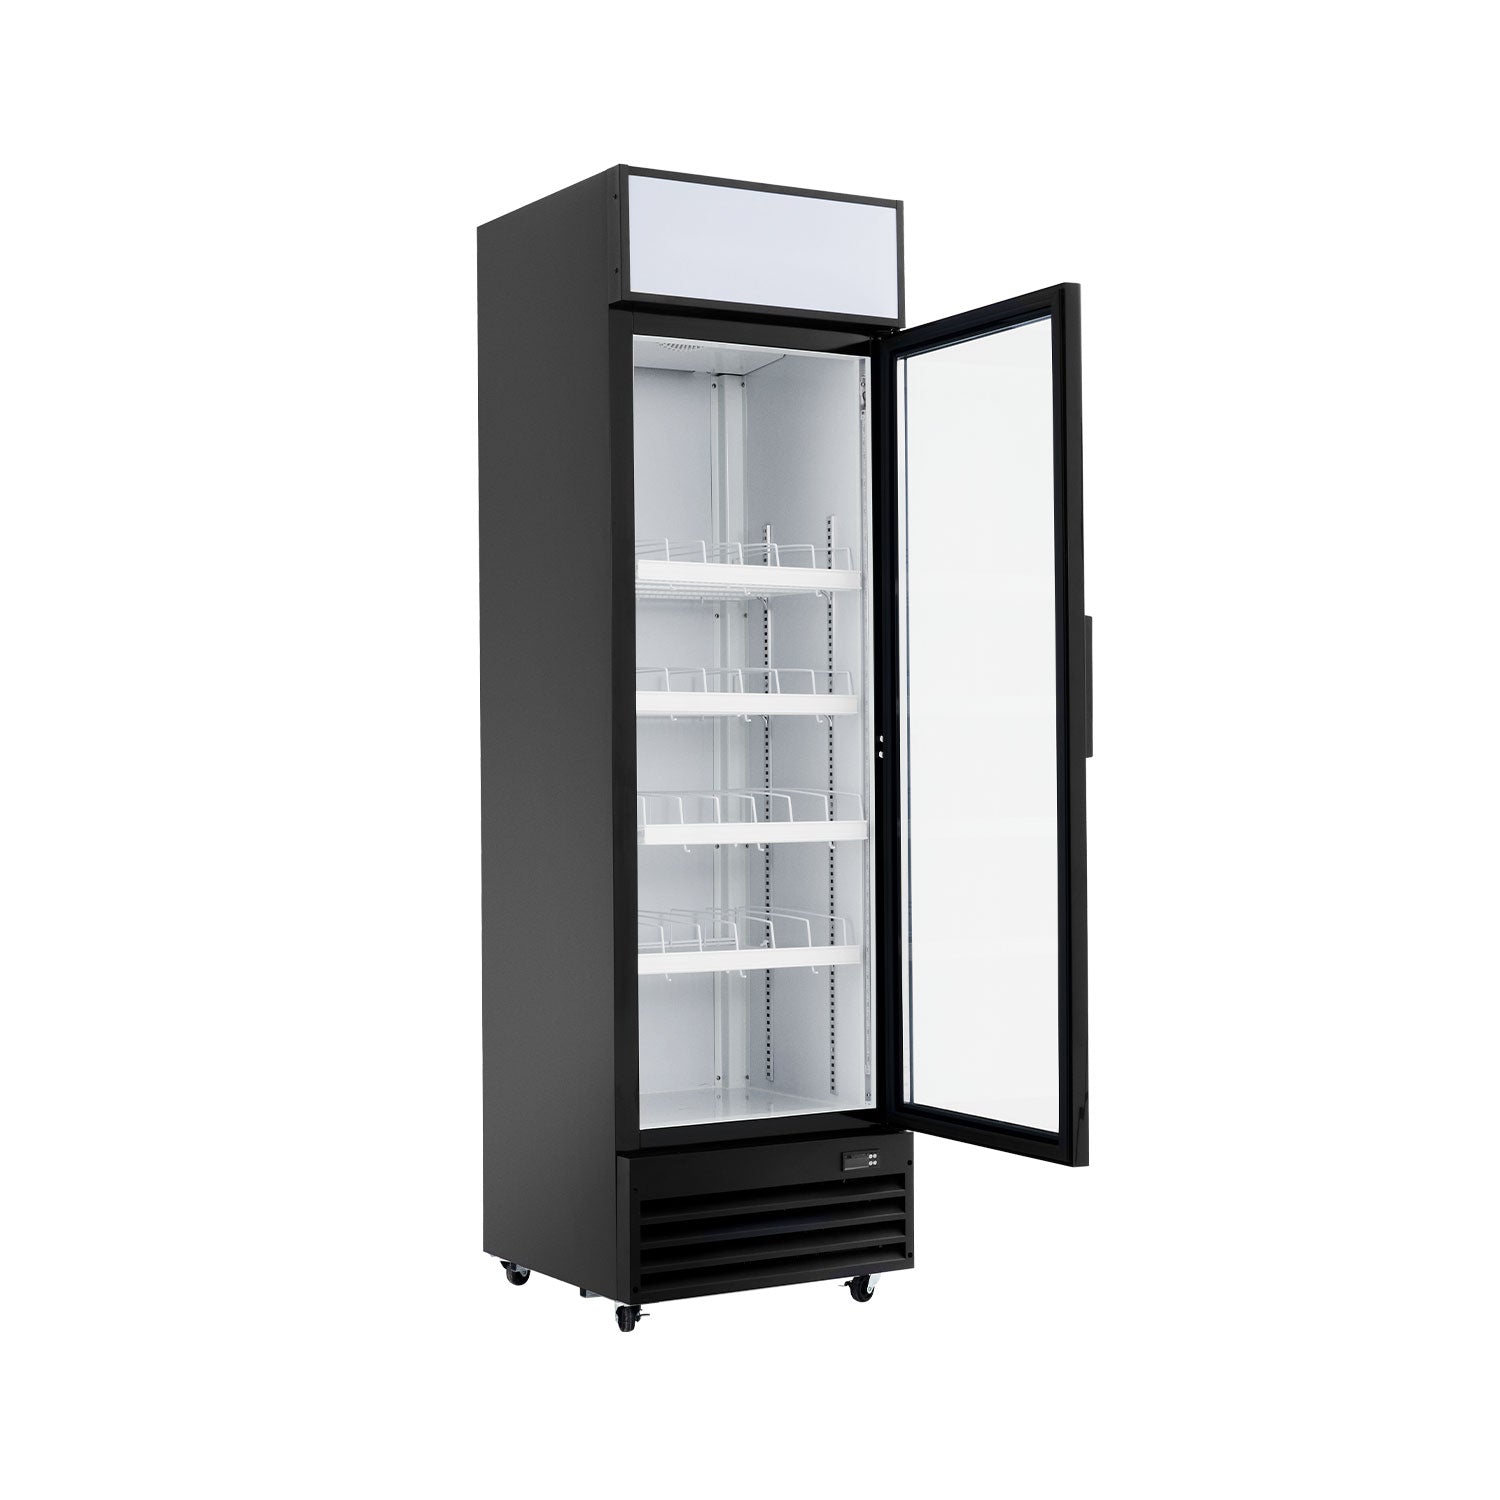 Wilprep commercial glass door refrigerator